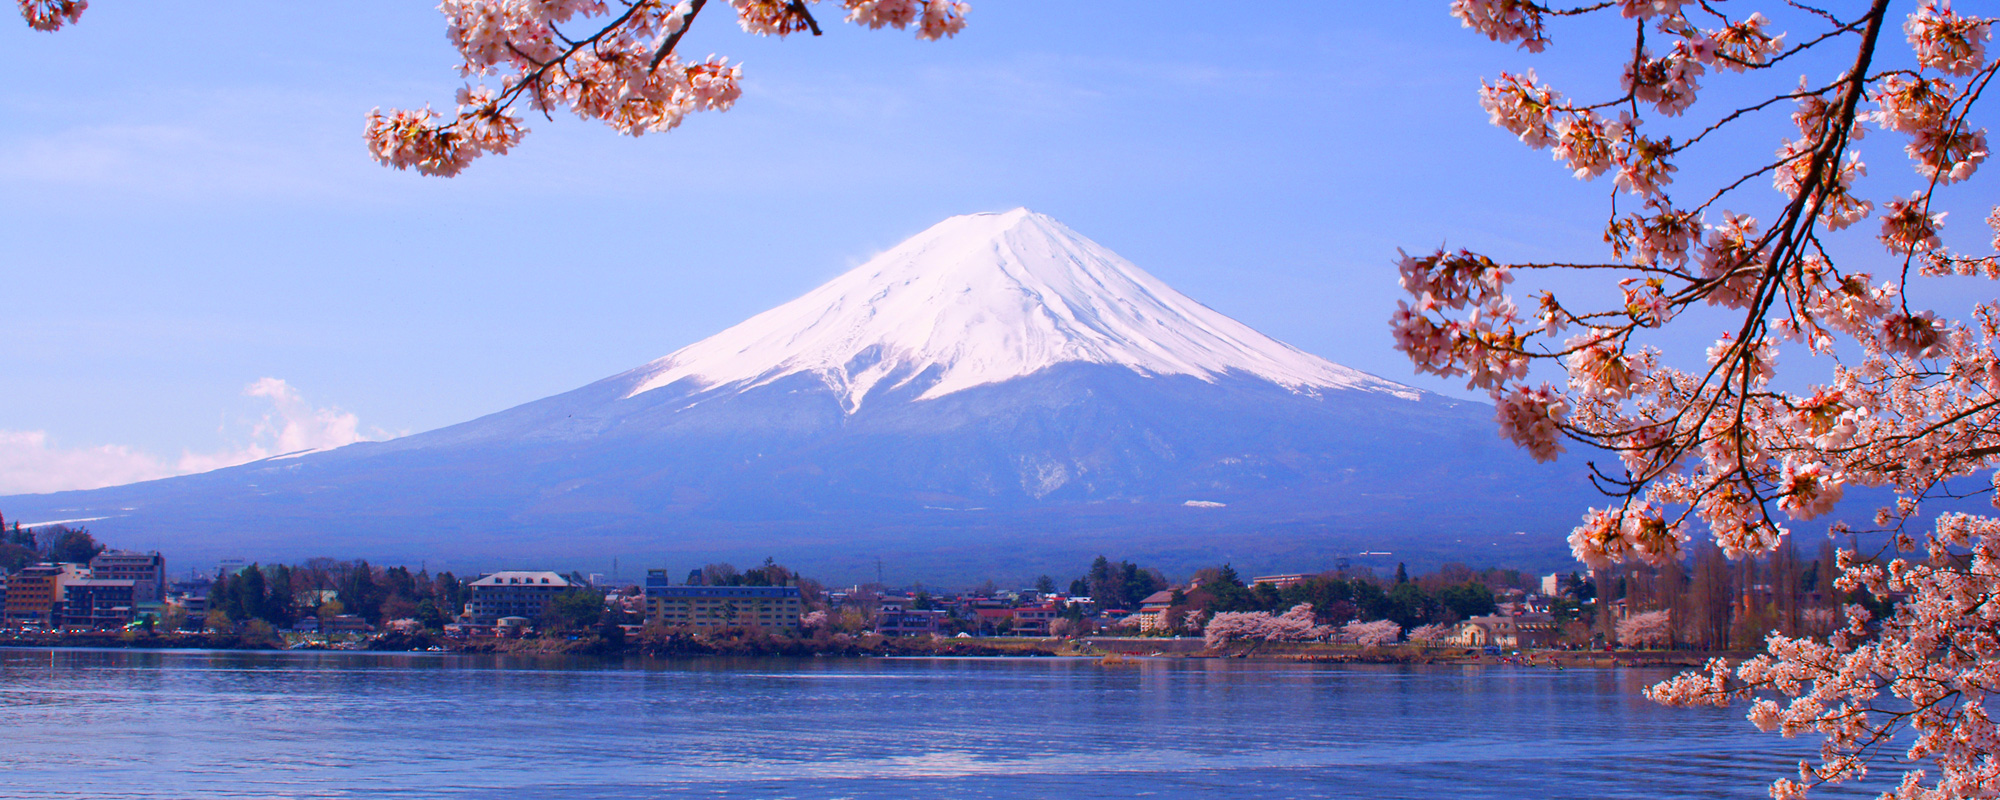 Mt Fuji & Lake Kawaguchi